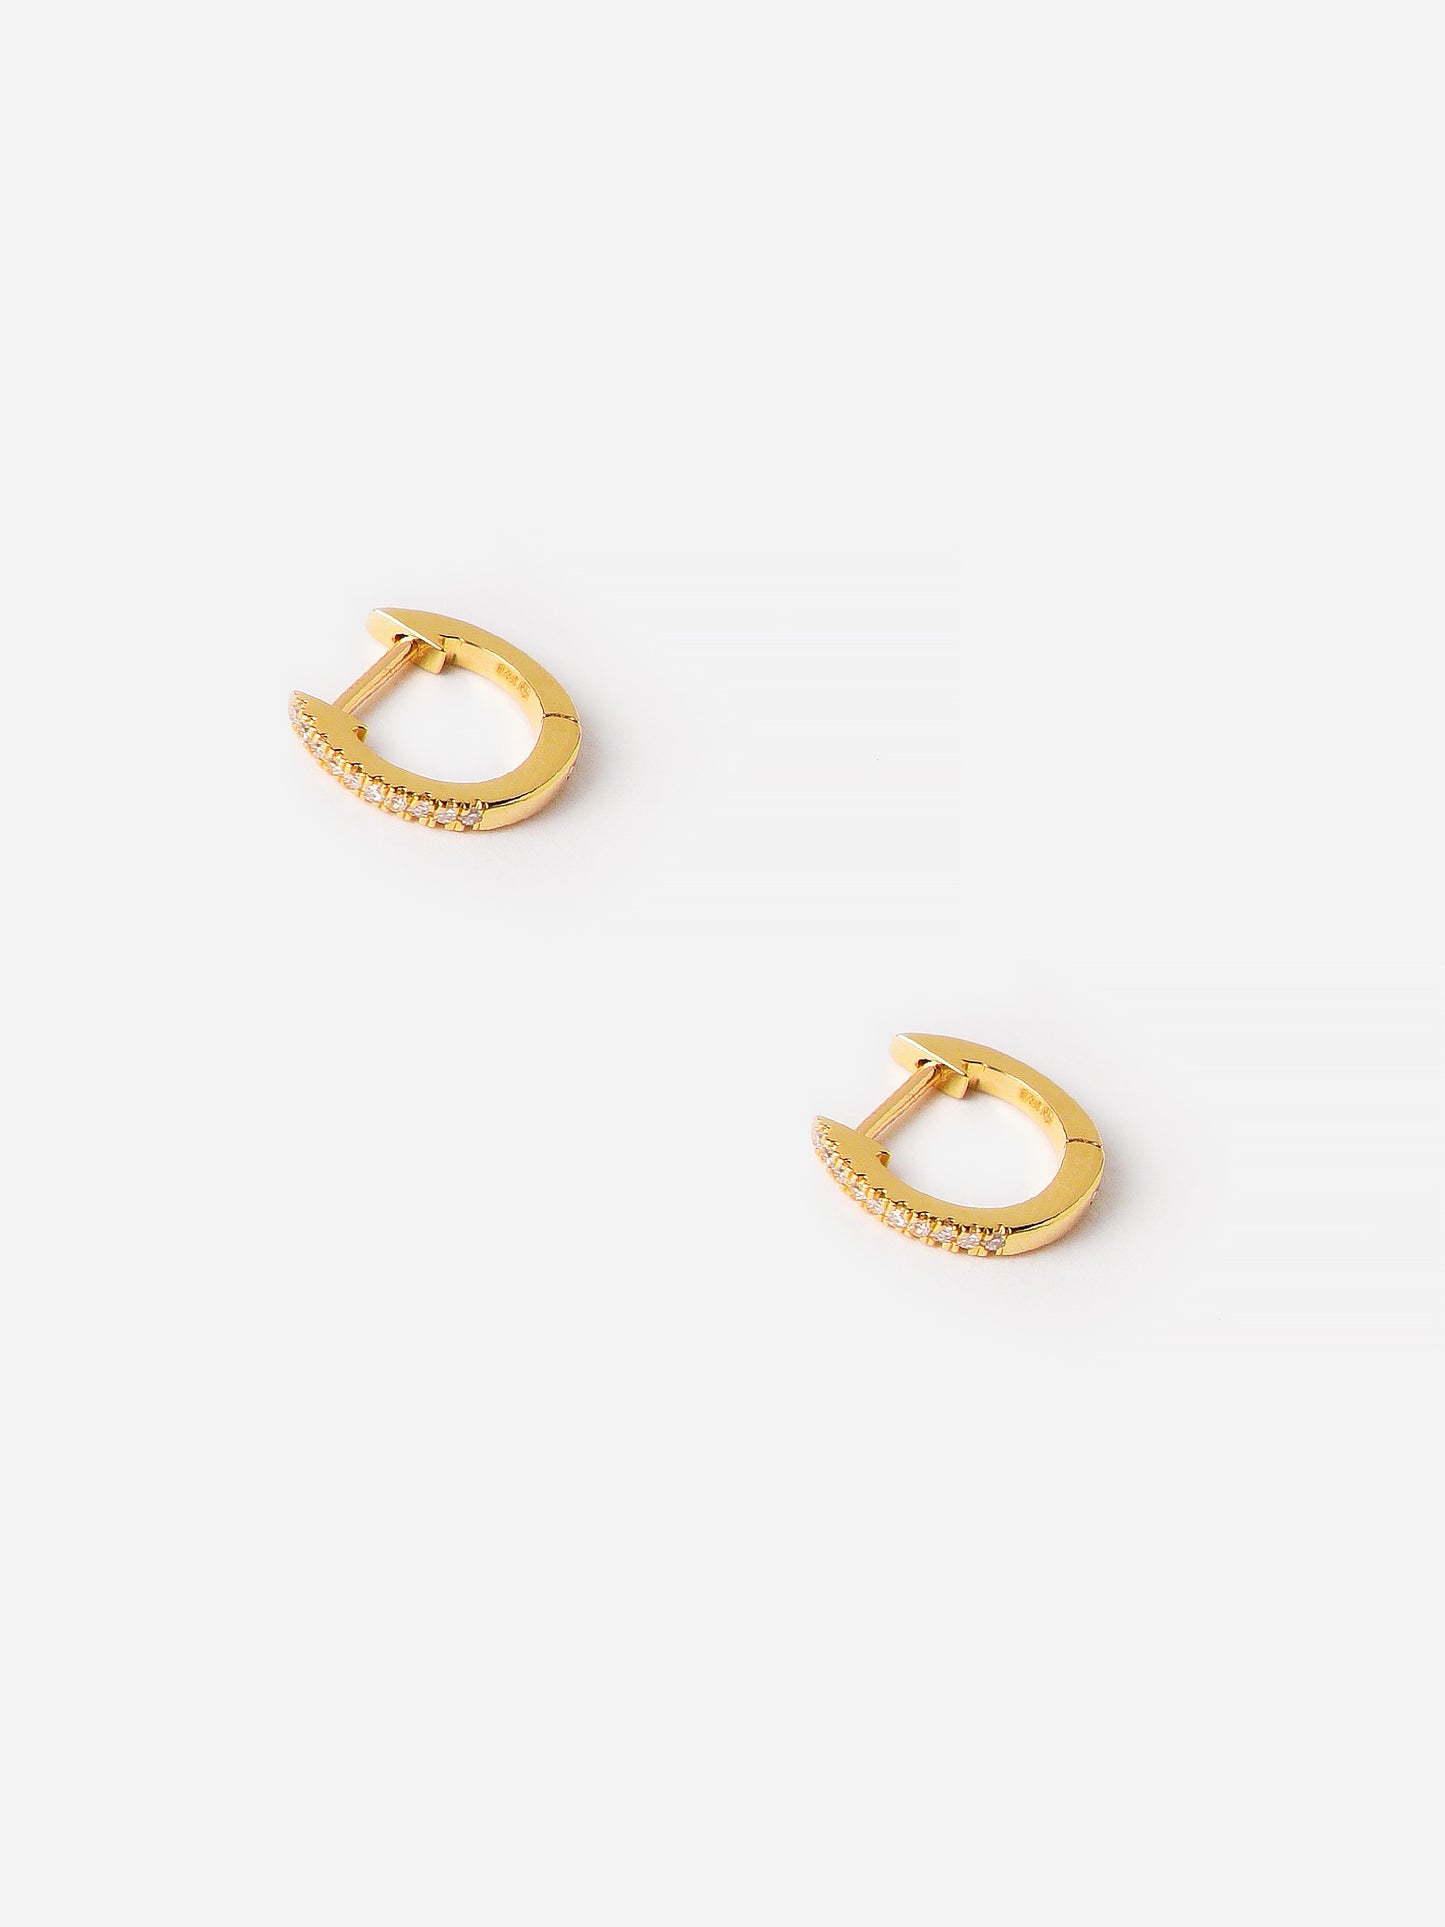 S. Bell Women's Diamond Huggie Earrings